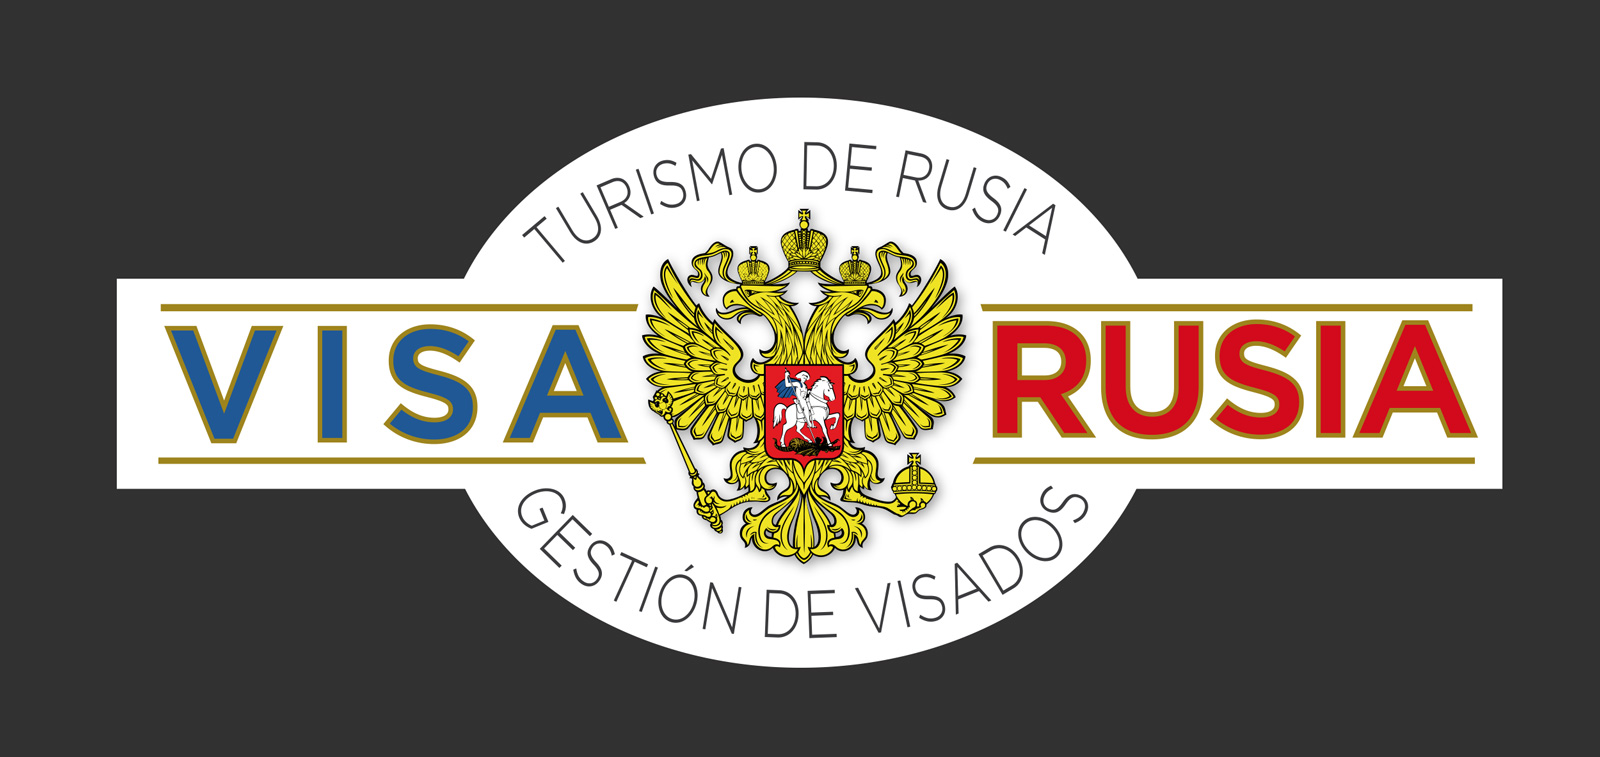 Diseño de logo para agencia de viajes, turismo y visados a Rusia